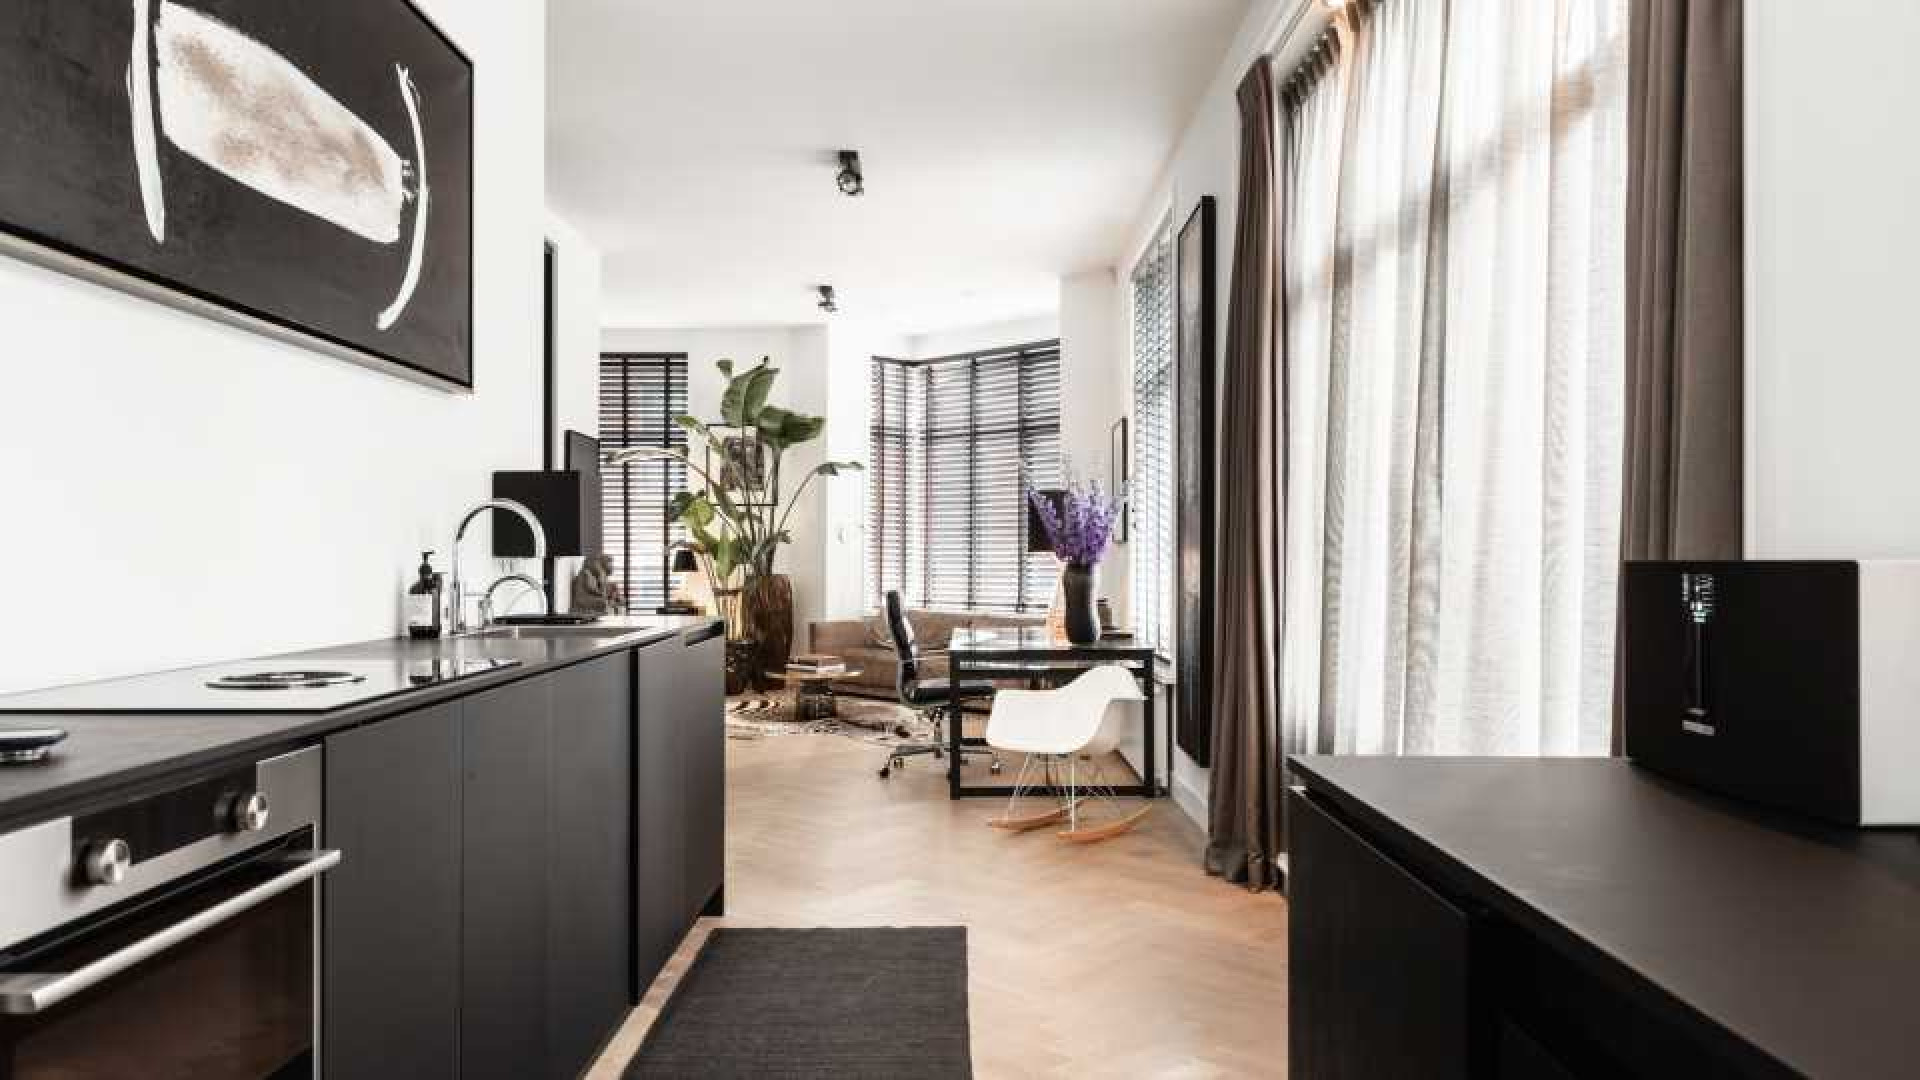 Leco van Zadelhoff zet zijn luxe dubbele bovenhuis te koop. 6